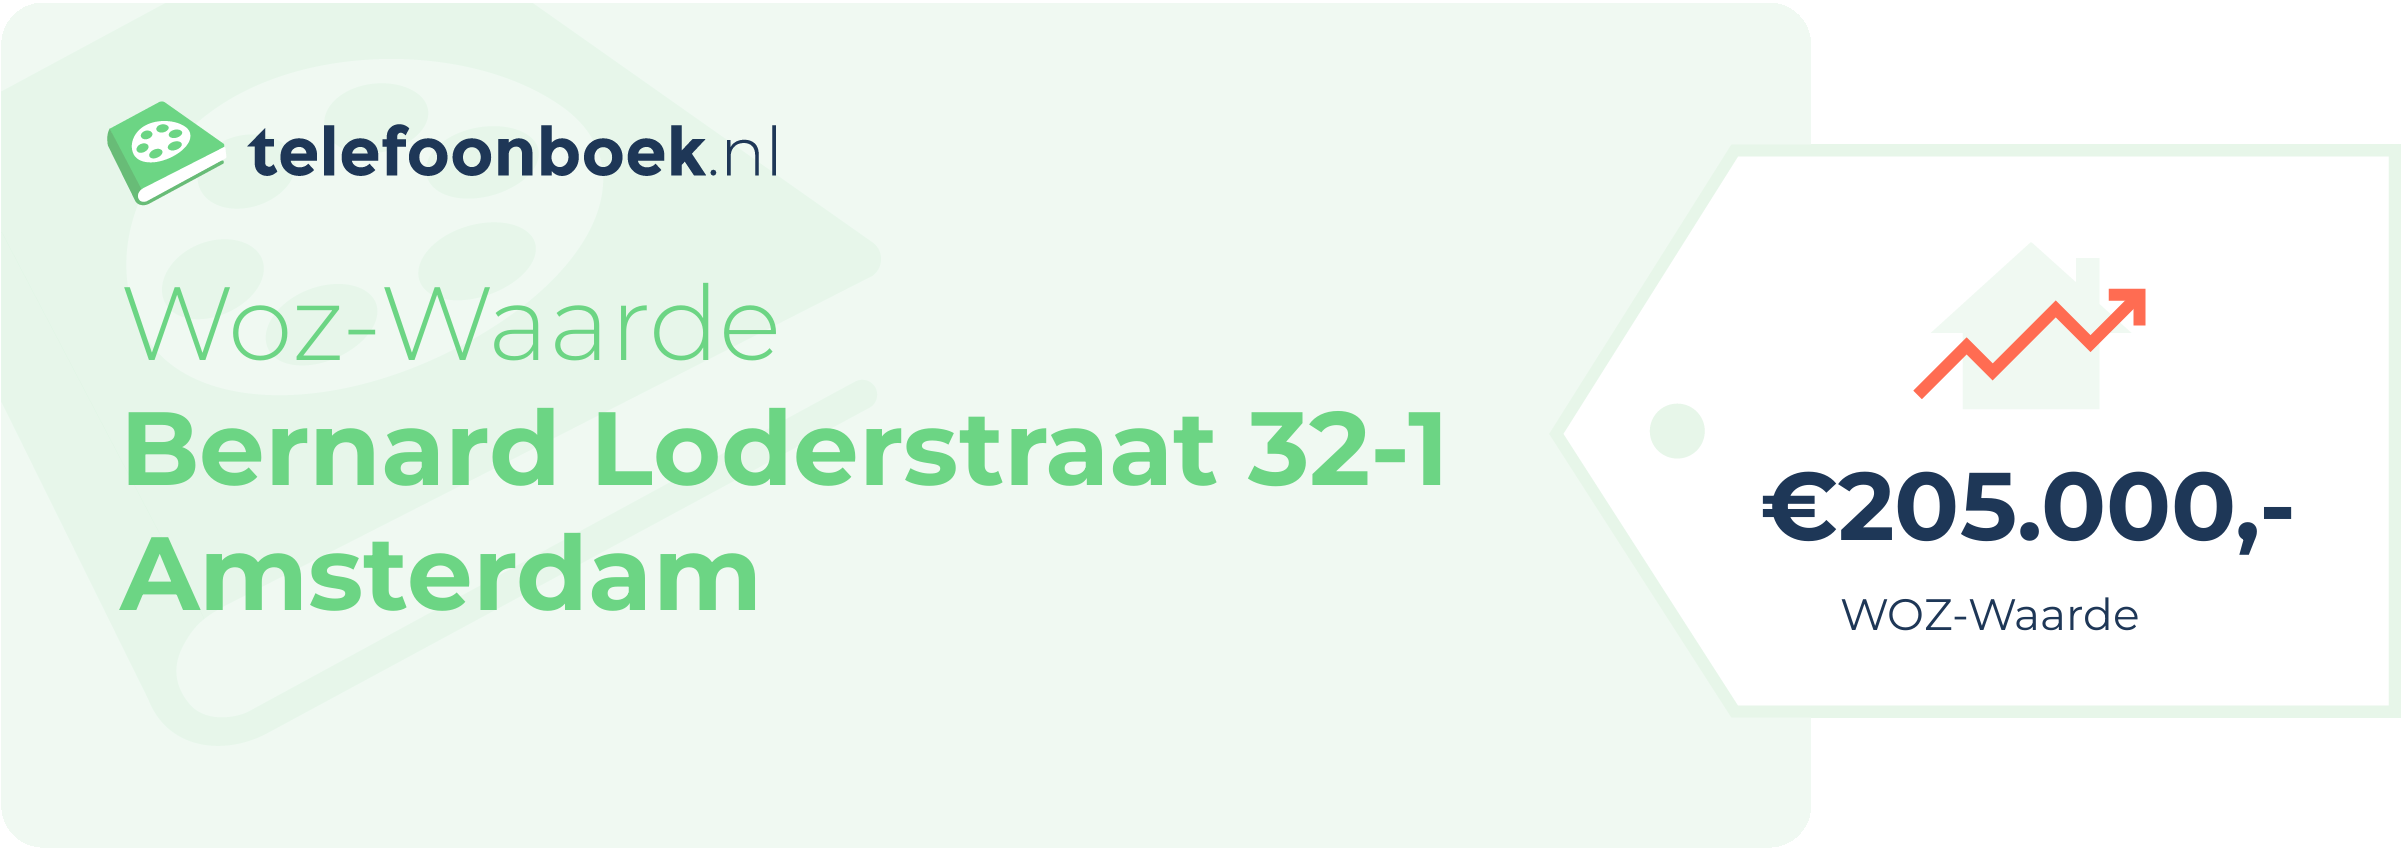 WOZ-waarde Bernard Loderstraat 32-1 Amsterdam